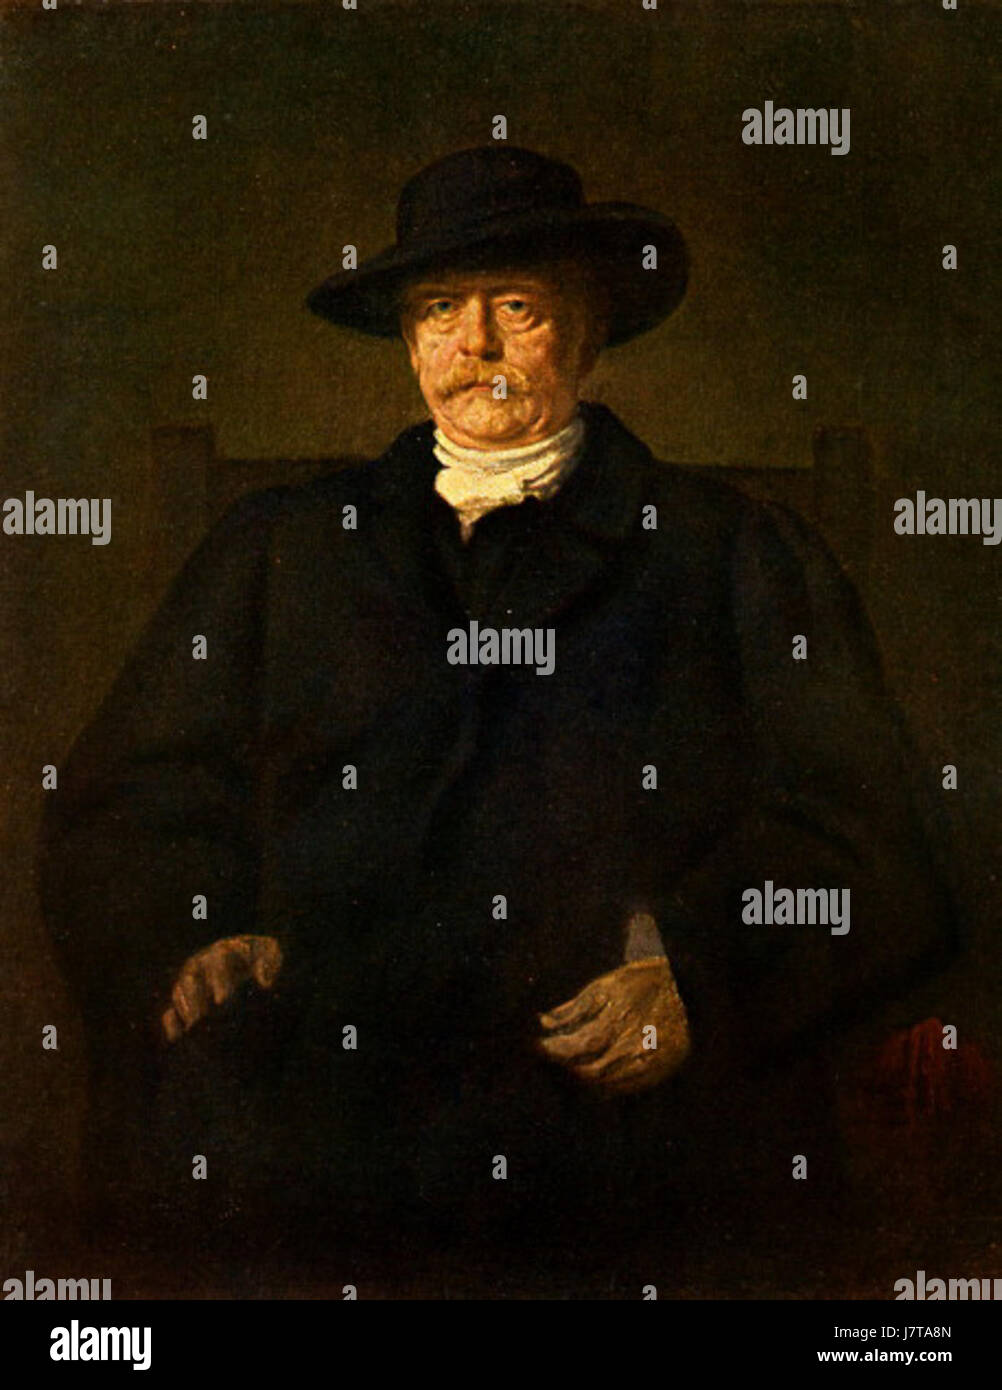 Count Otto von Bismarck portrait by Franz von Lenbach Stock Photo